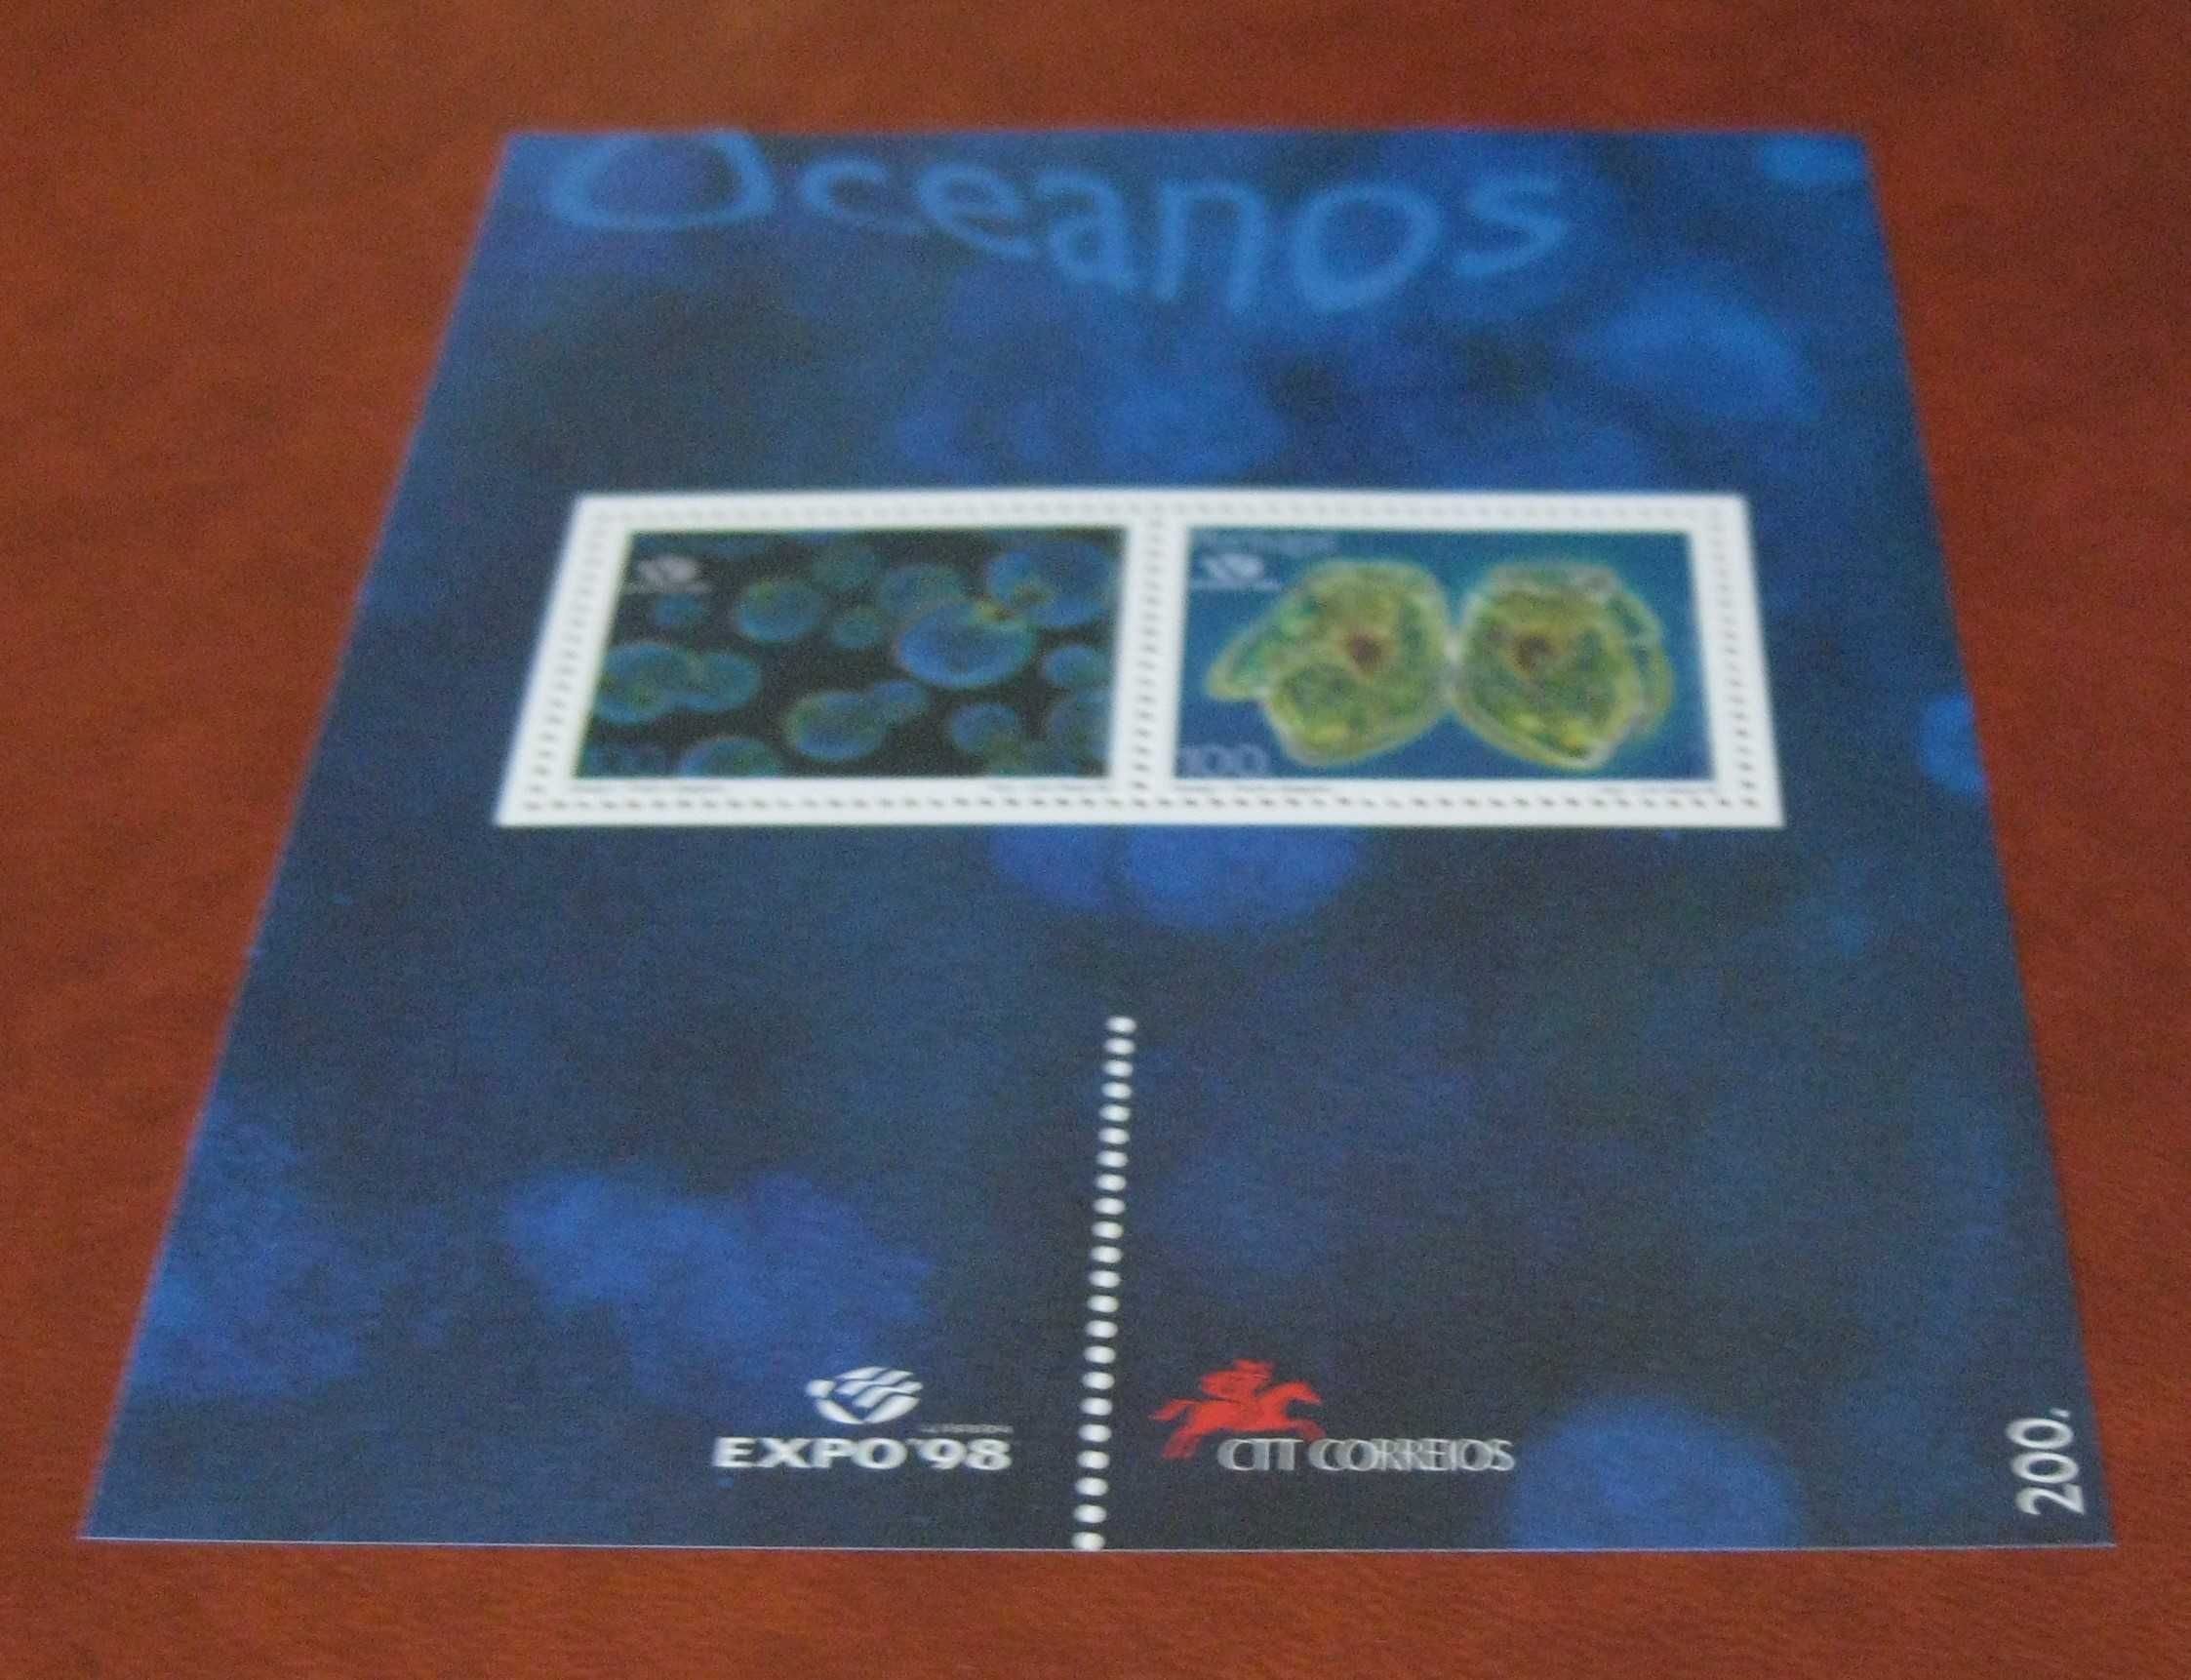 Bloco nº 192 – Oceanos – Expo’98. O Plâncton